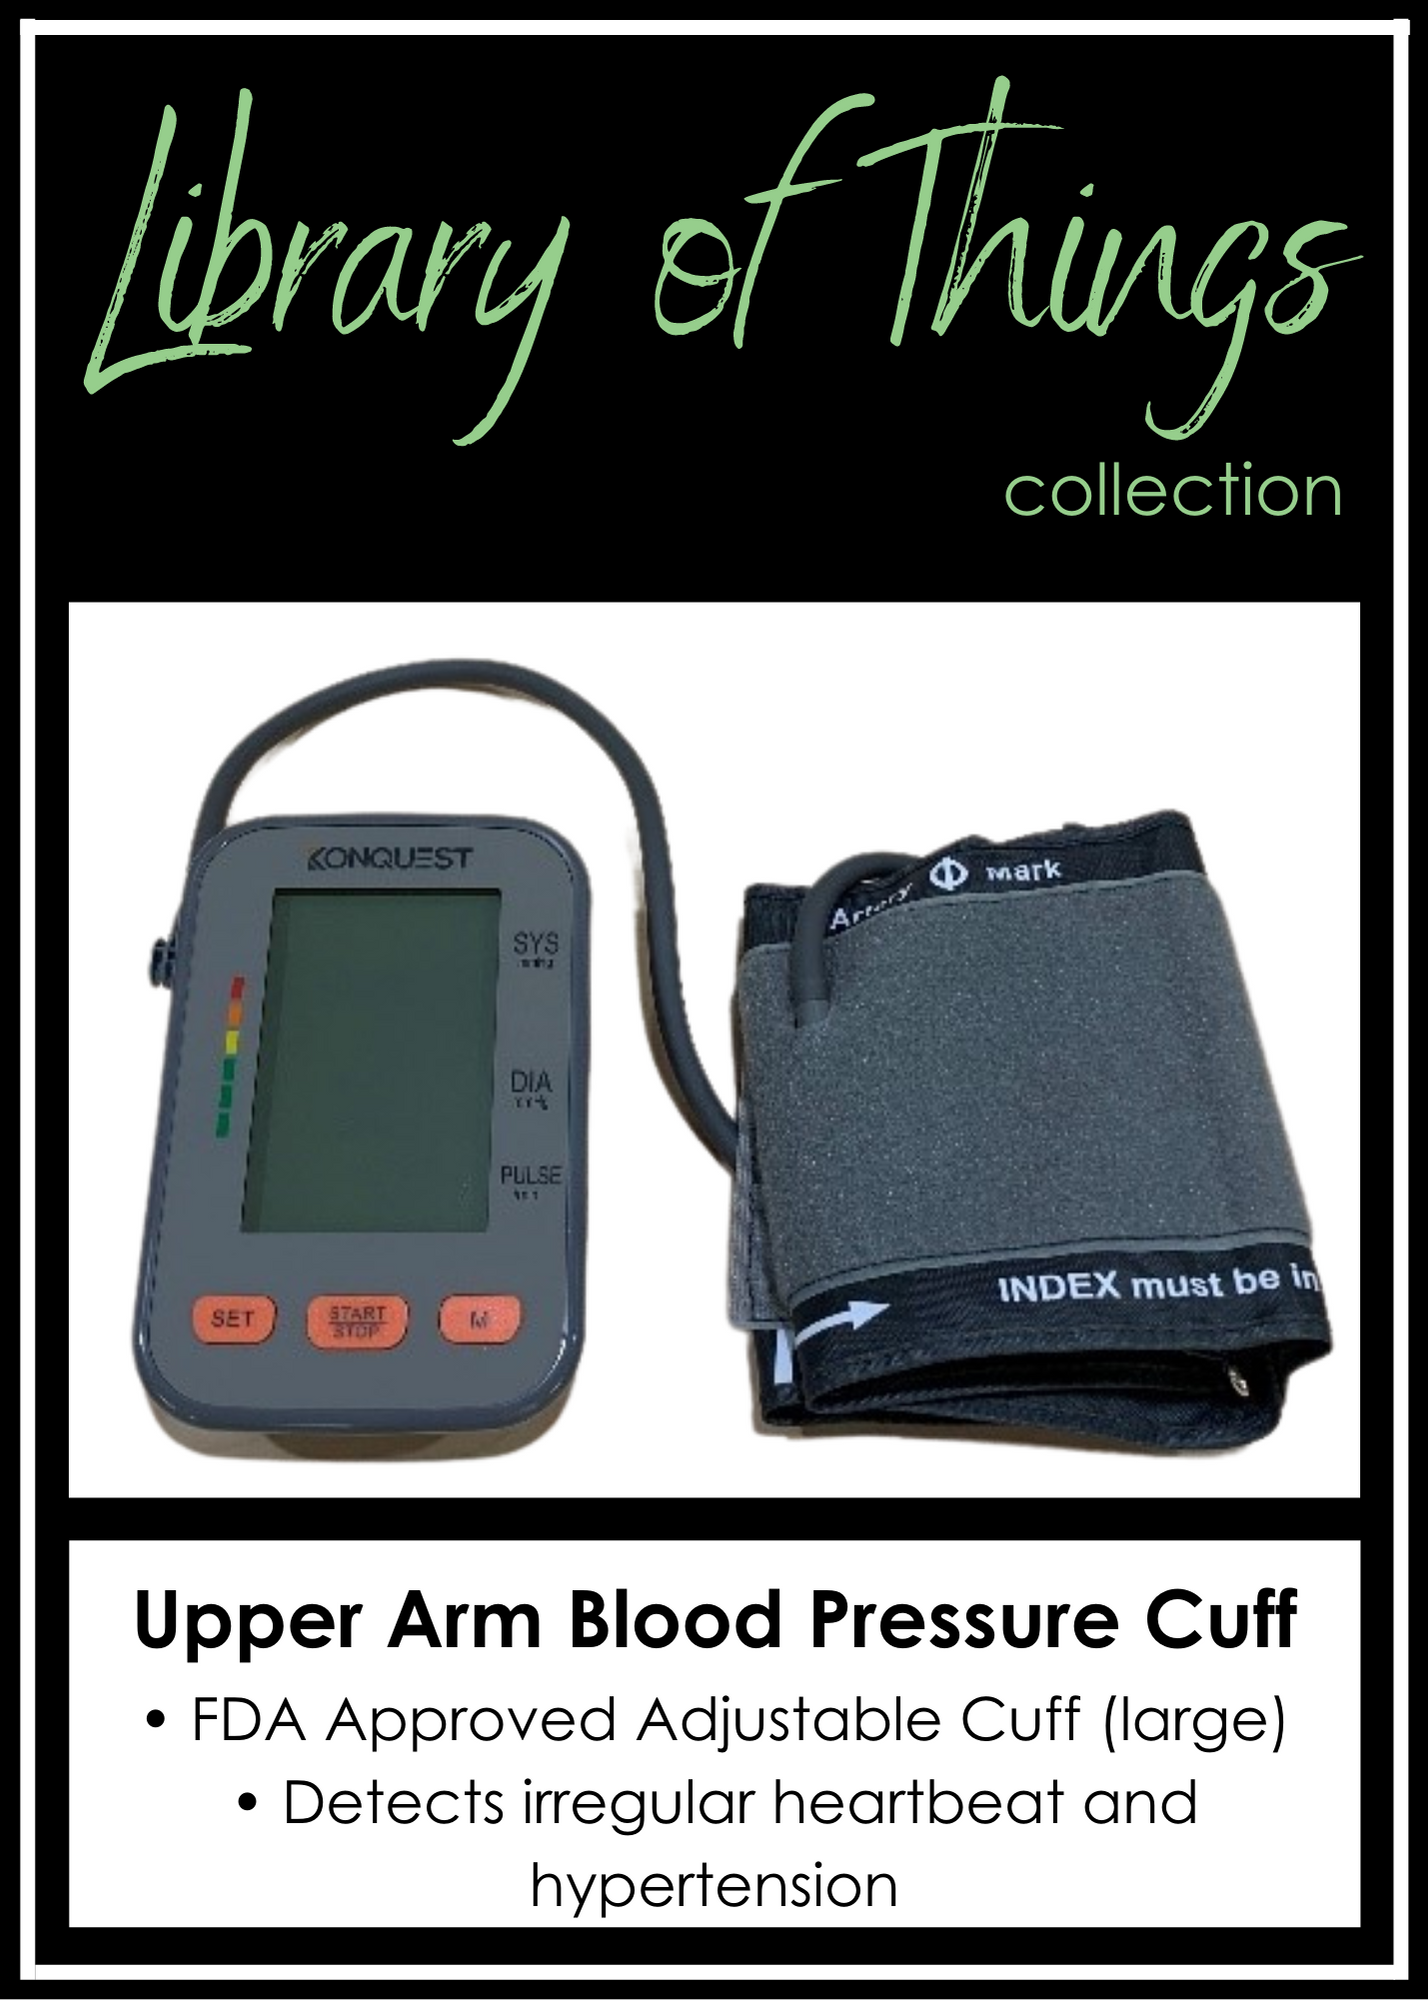 Upper Arm Blood Pressure Cuff